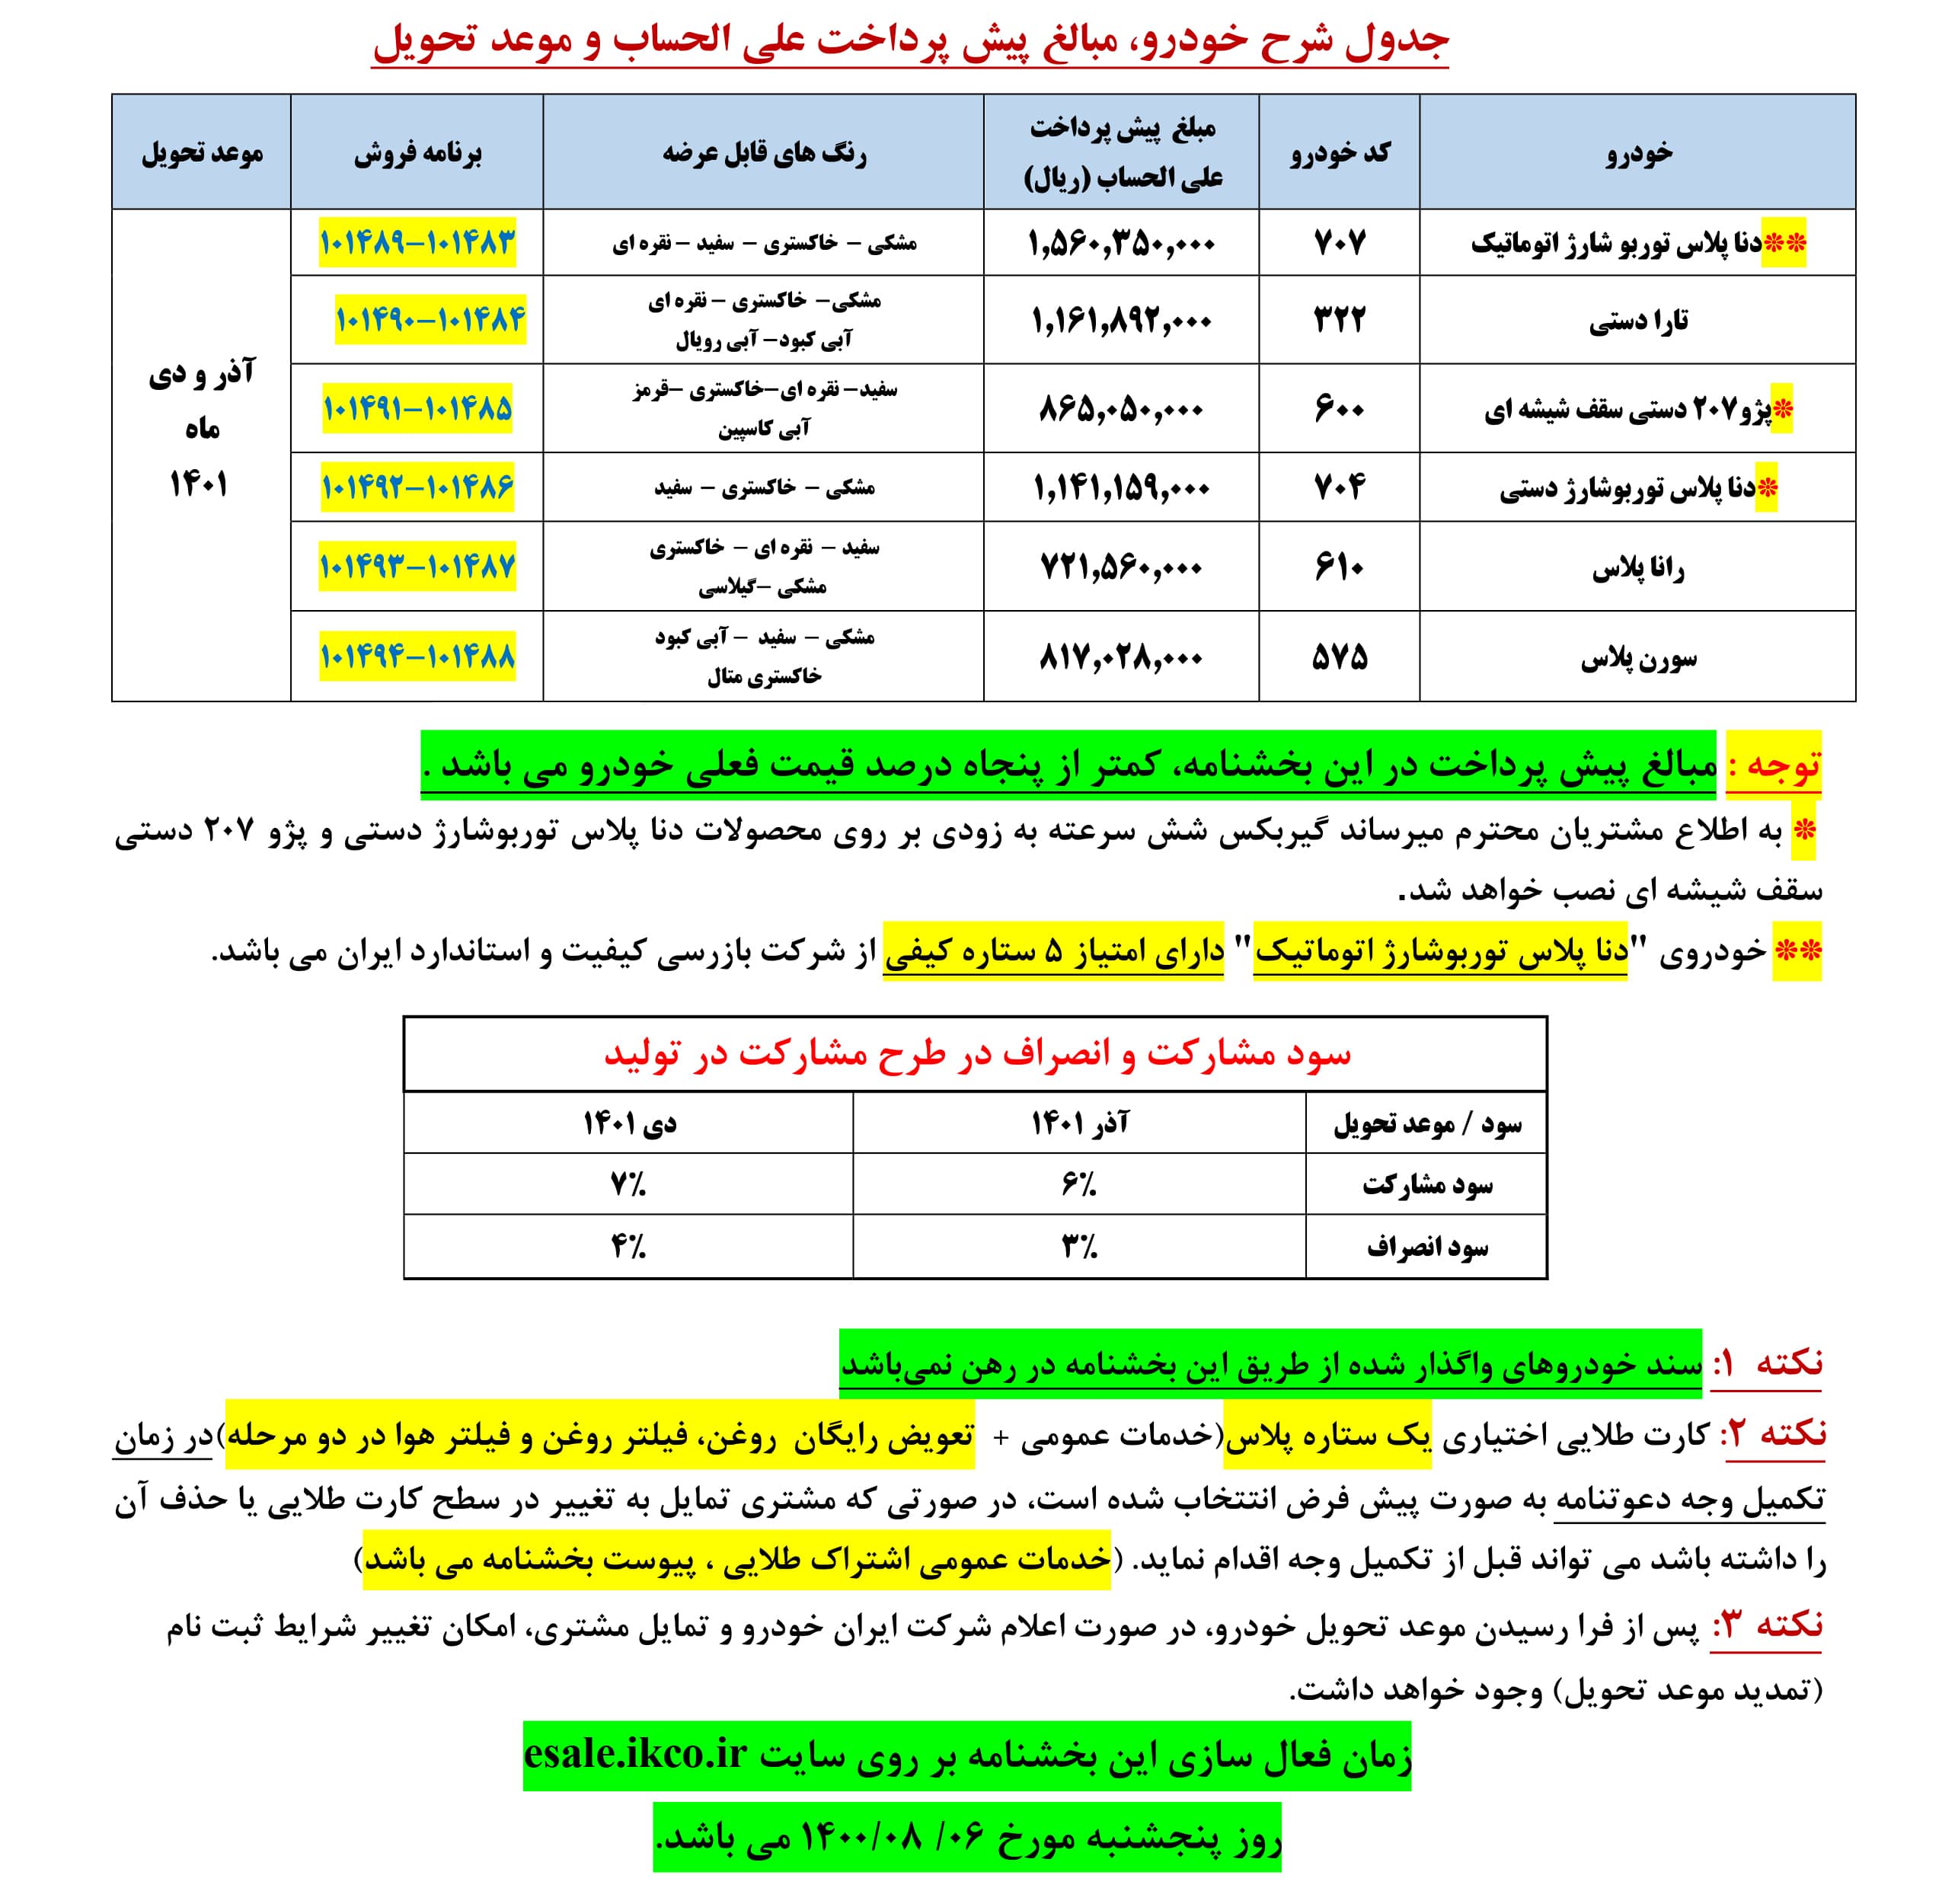 طرح مشارکت در تولید ایران خودرو آبان 1400